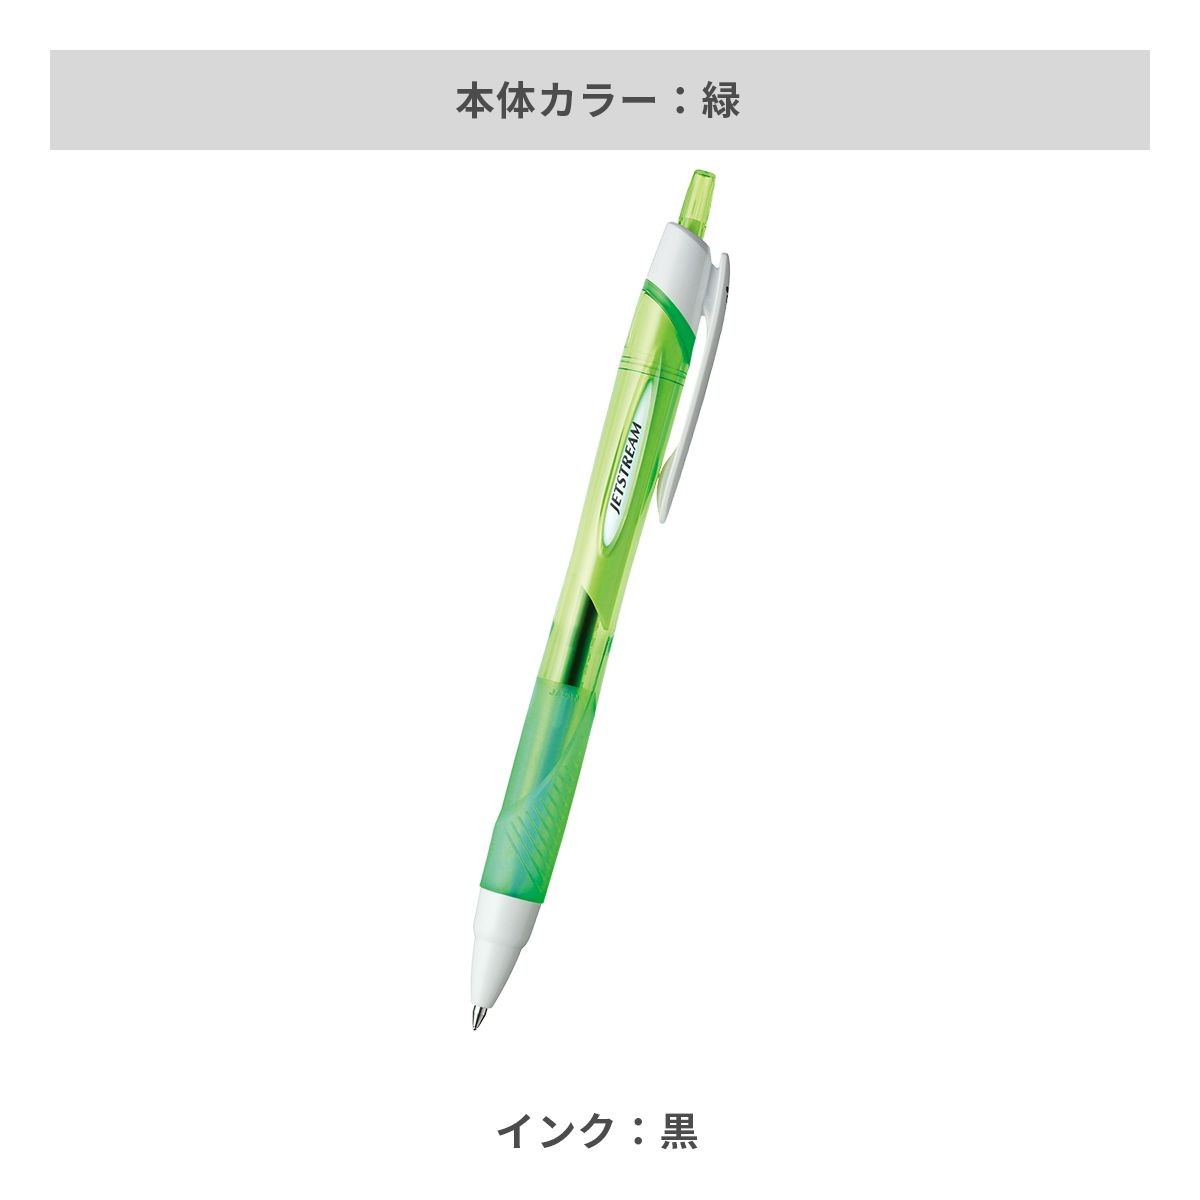 三菱鉛筆 ジェットストリーム 0.7mm【名入れボールペン / パッド印刷